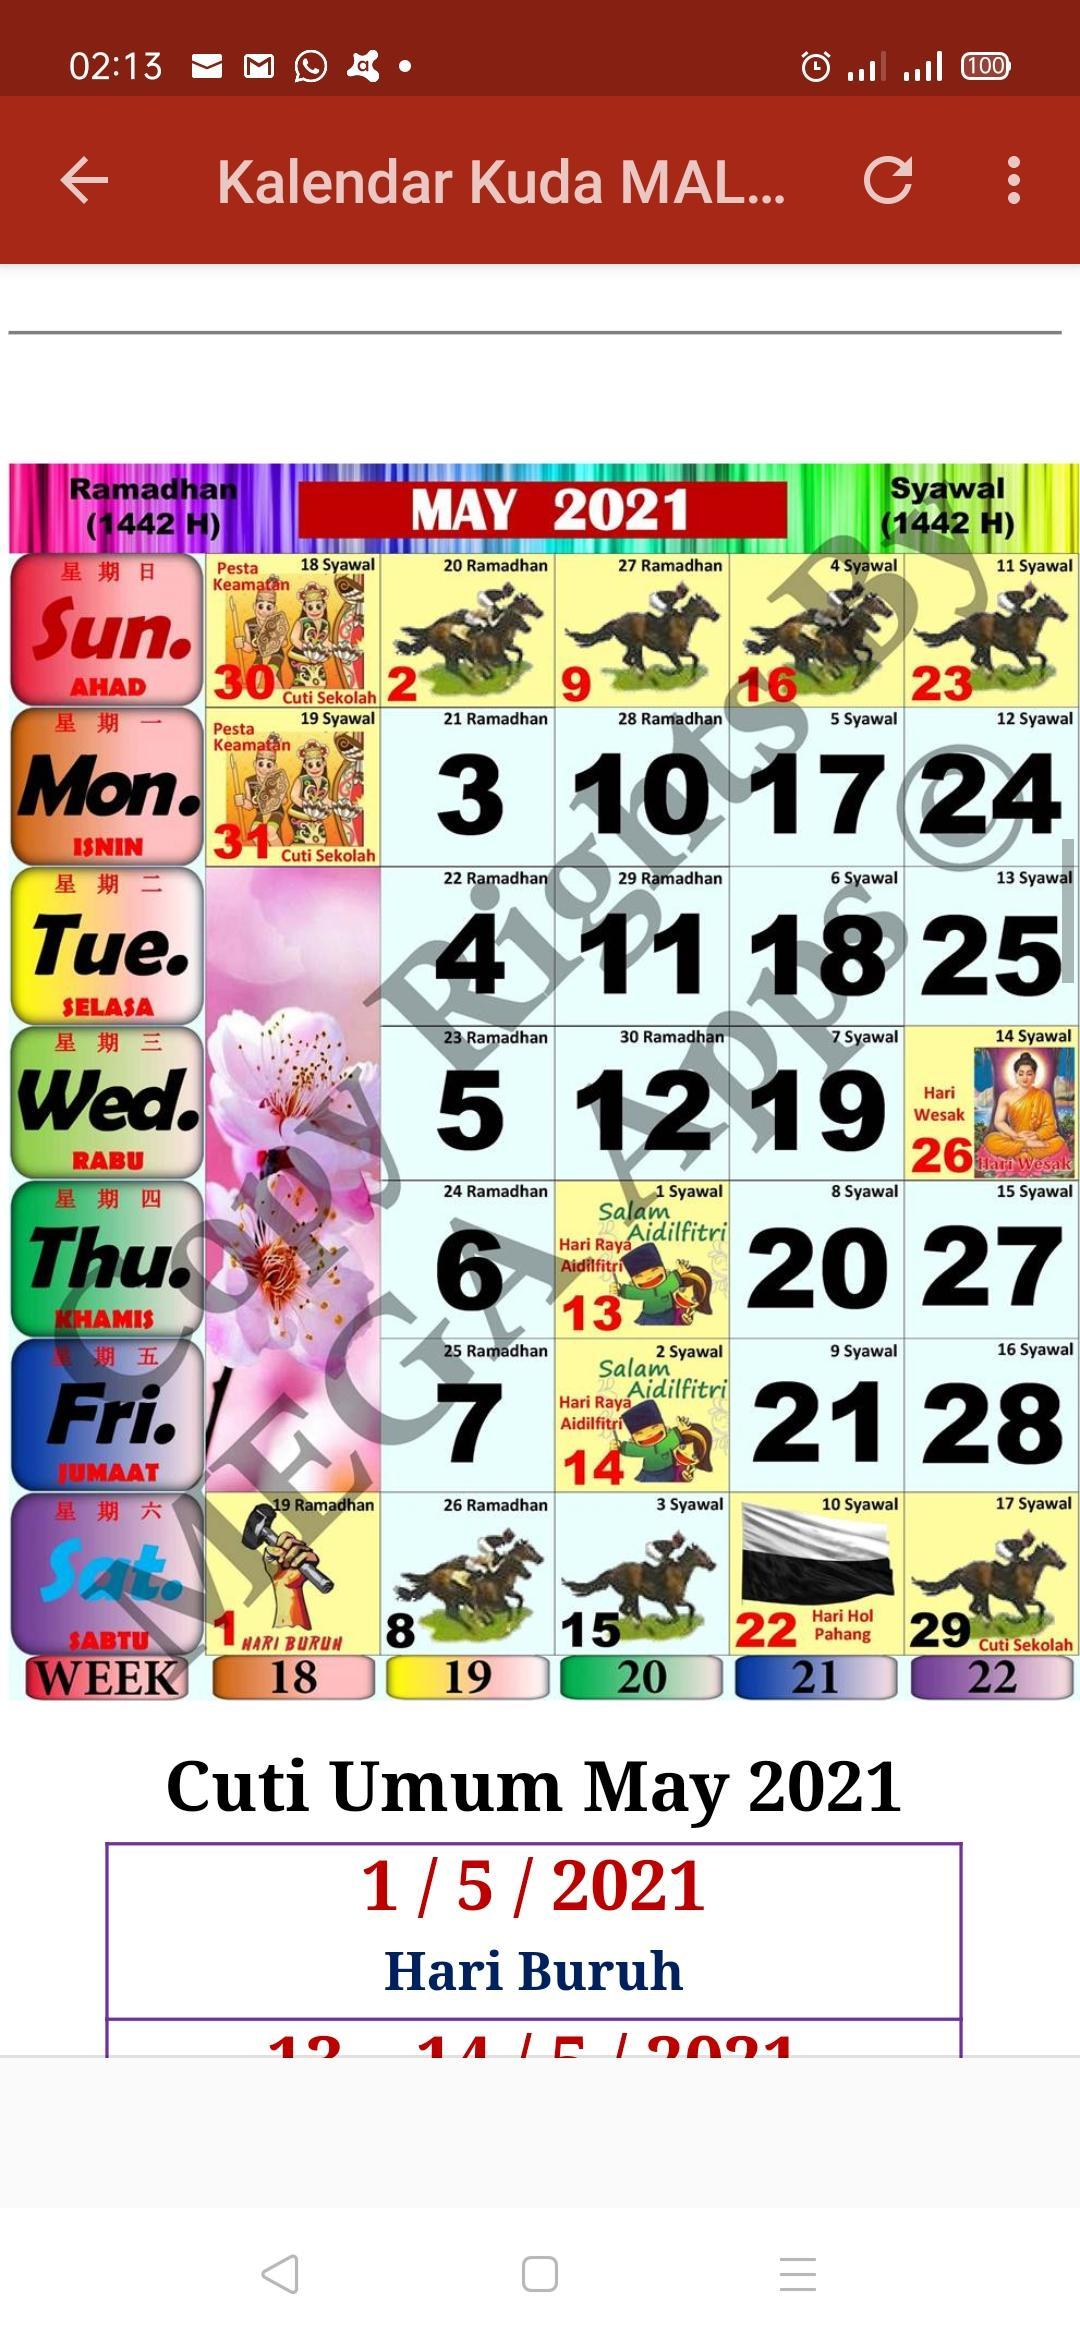 2021 Calendar Kuda Malaysia / Malaysia Calendar 2020 With ...